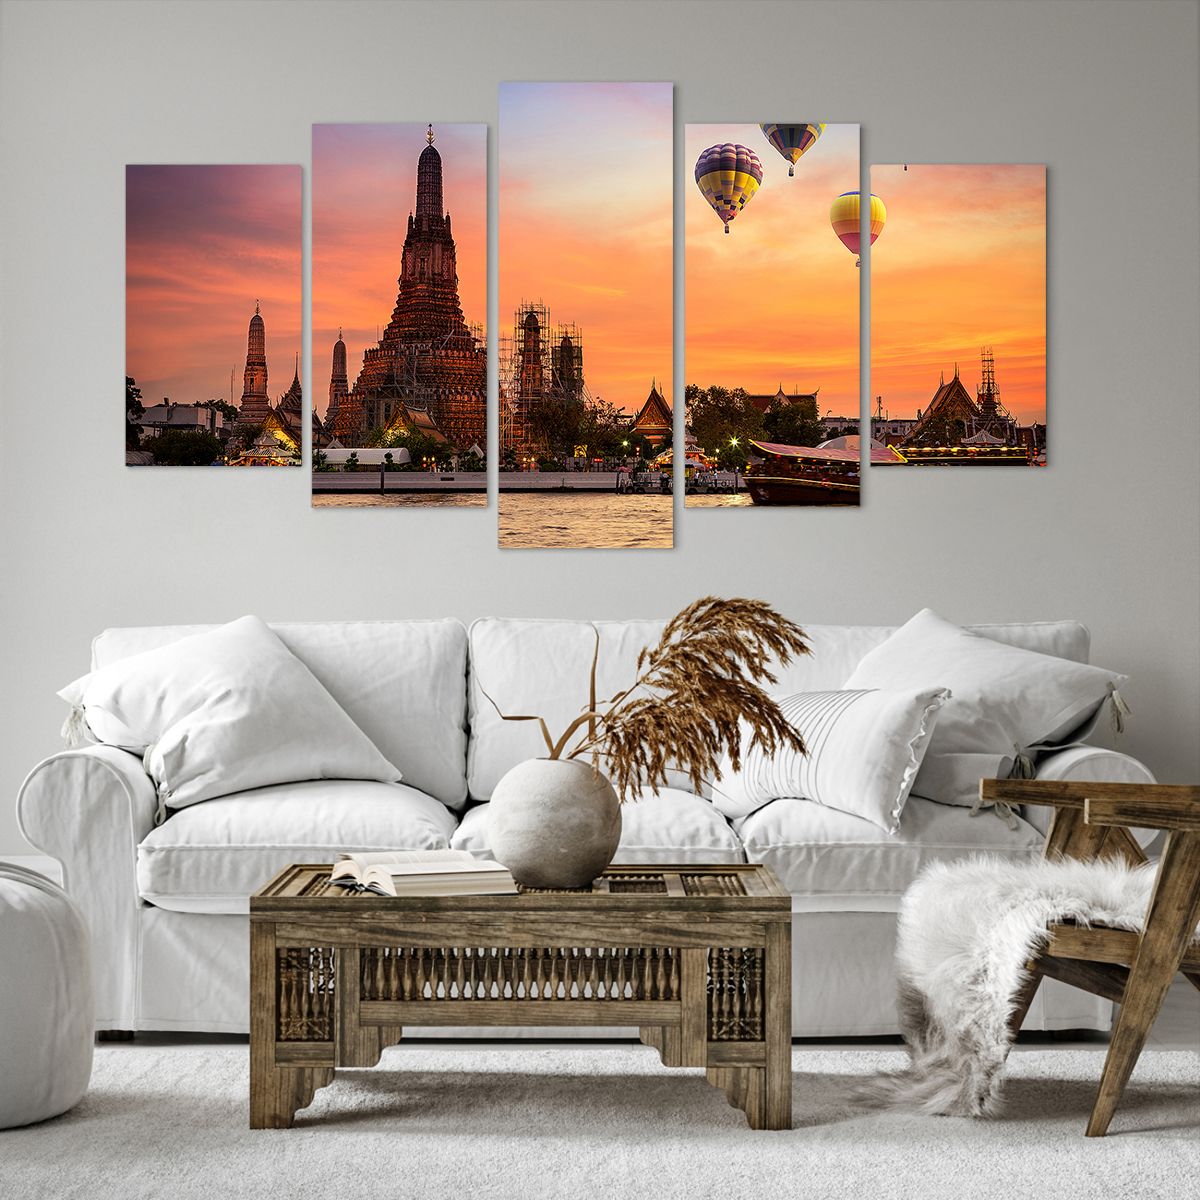 Bild auf Leinwand Bangkok, Bild auf Leinwand Tempel Der Morgenröte, Bild auf Leinwand Thailand, Bild auf Leinwand Luftballons, Bild auf Leinwand Asien